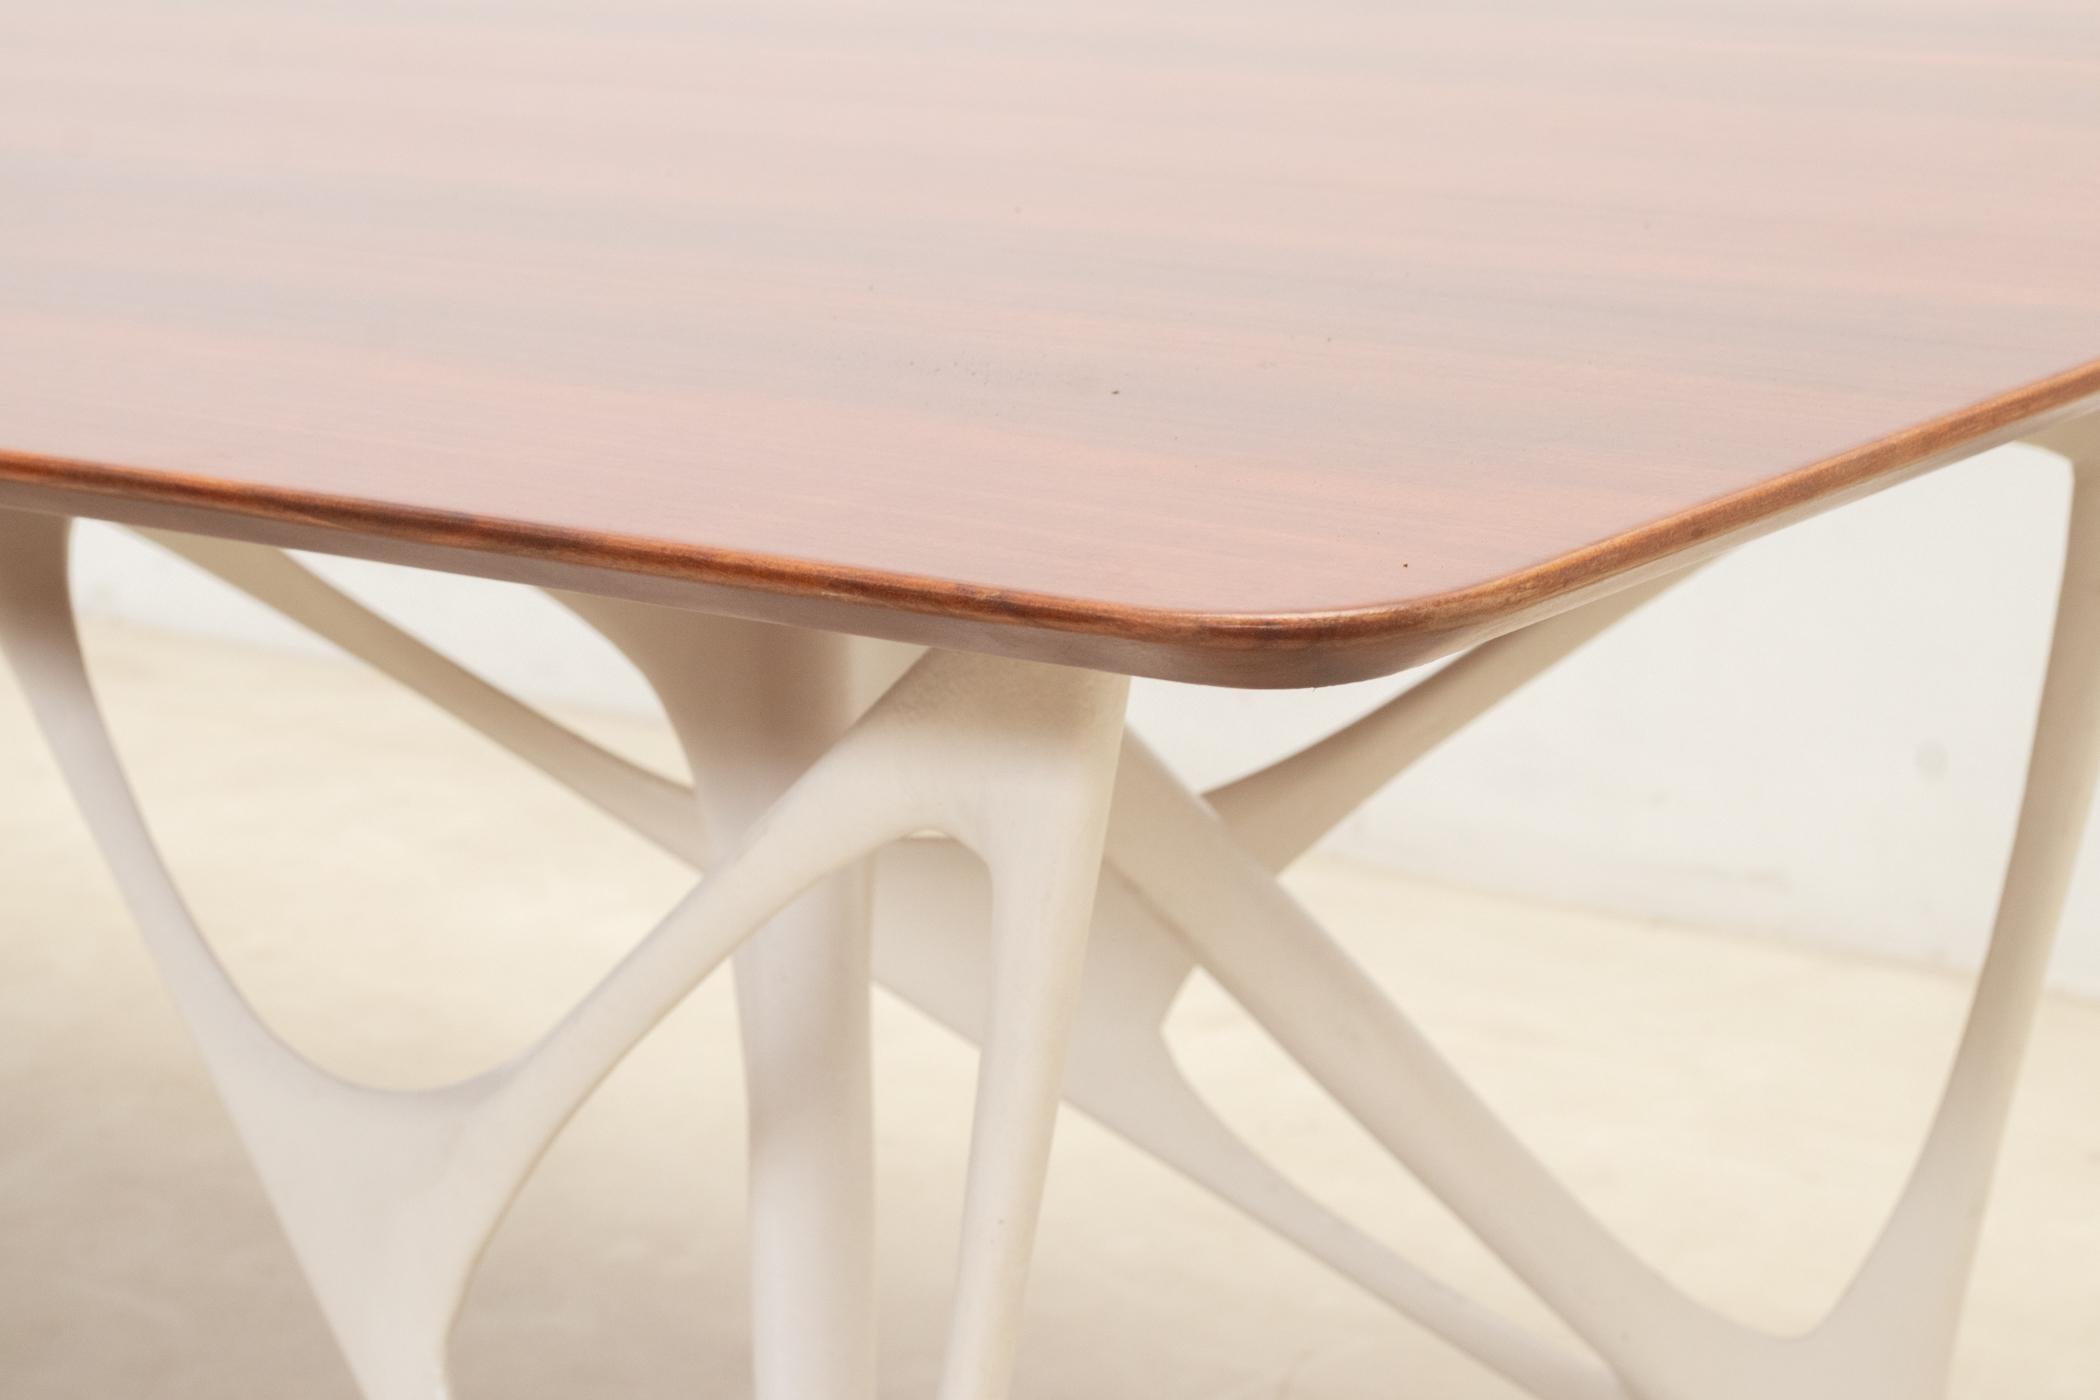 Architectural table by Le Opere e i Giorni studio For Sale 2